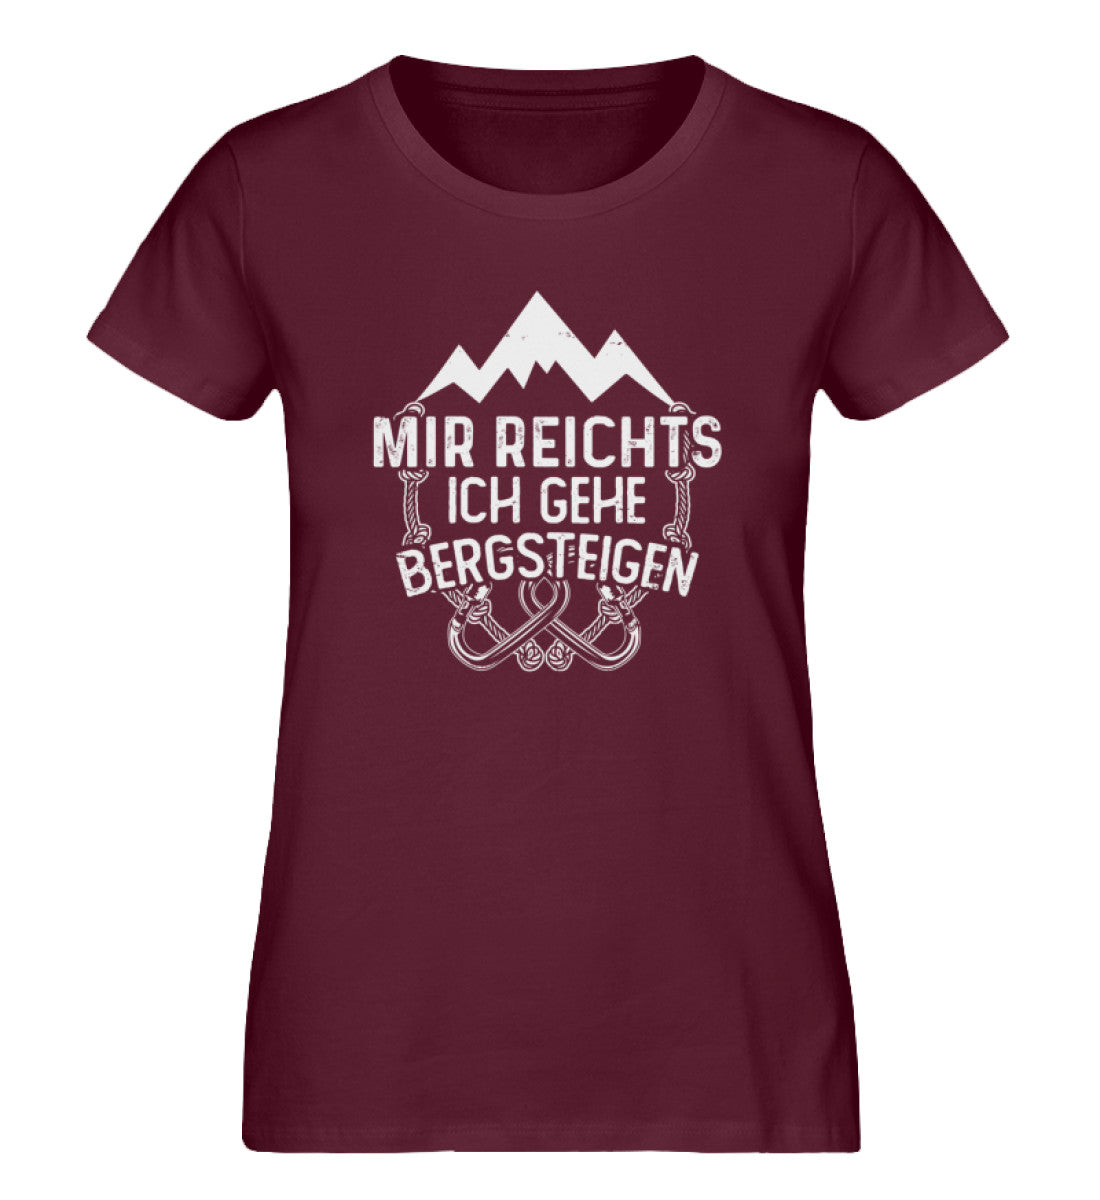 Mir reichts ich geh bergsteigen - Damen Organic T-Shirt berge klettern Weinrot